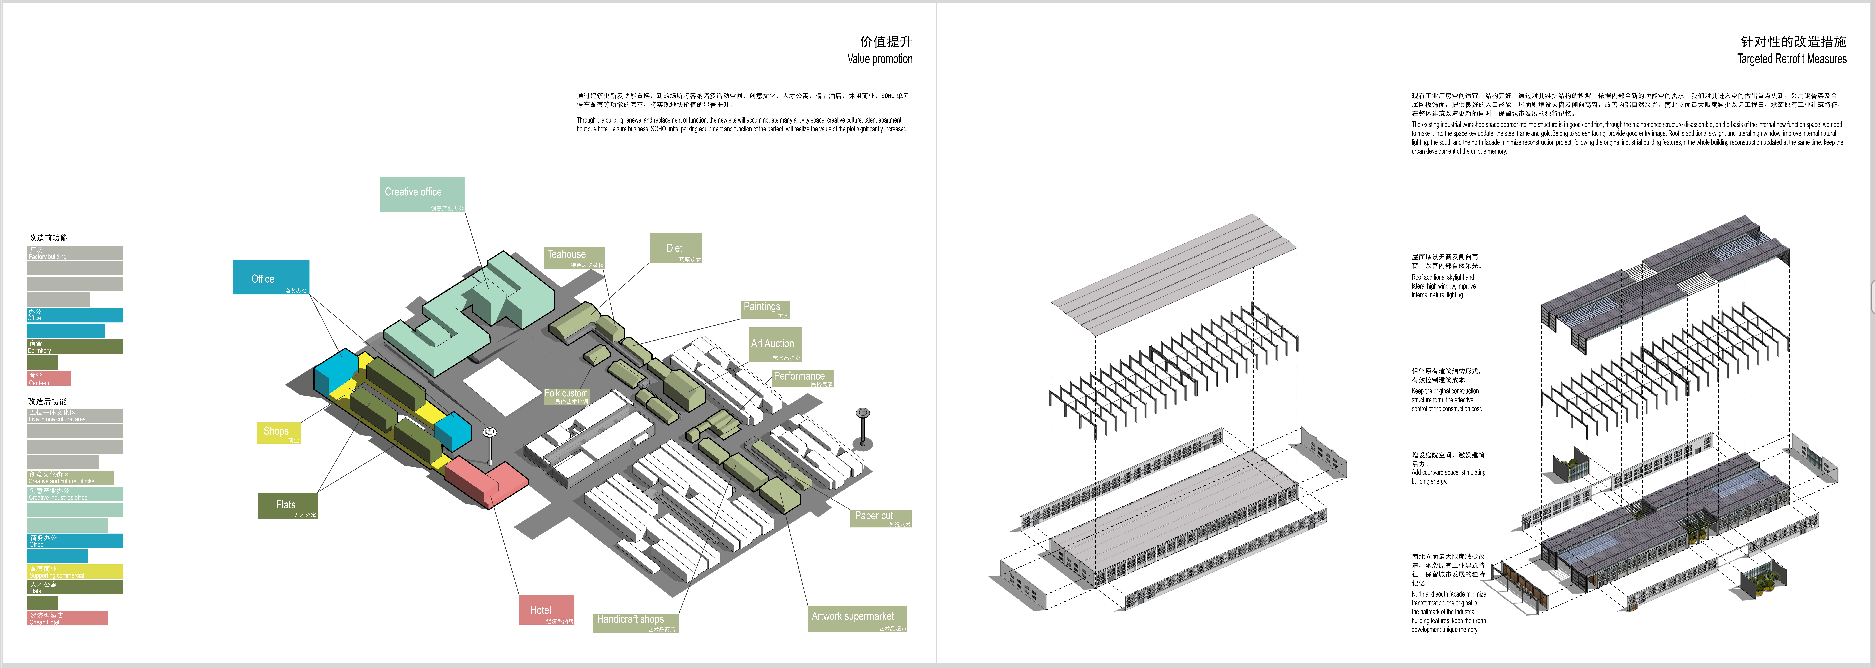 亳州卷烟厂改造规划设计方案-5